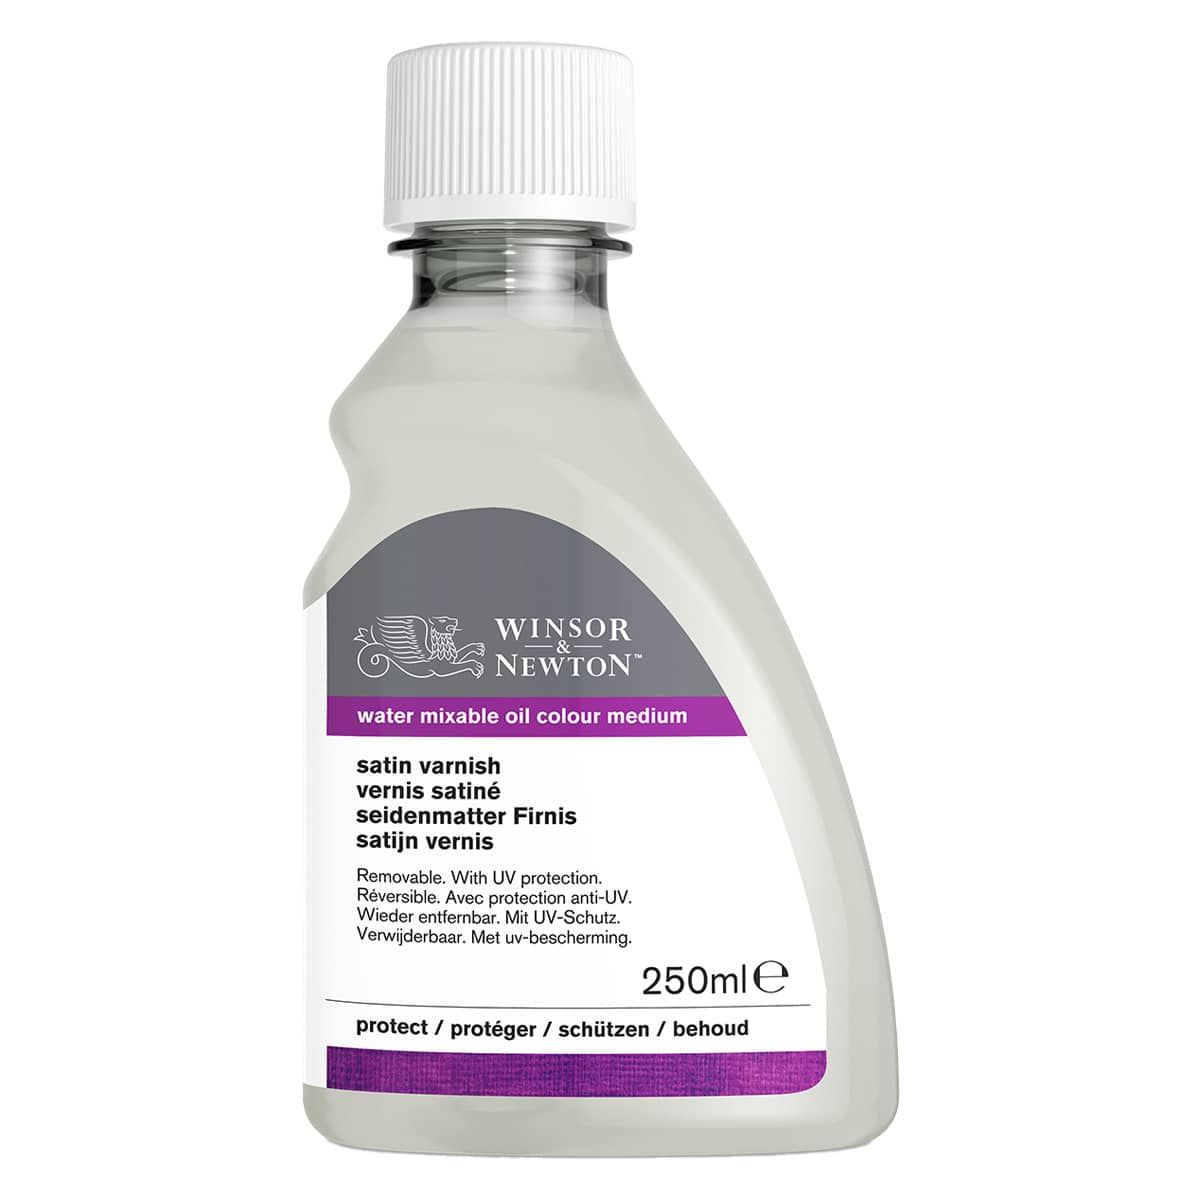 Winsor & Newton Artisan Water-Mixable Oil Medium - Satin Varnish, 250ml Bottle